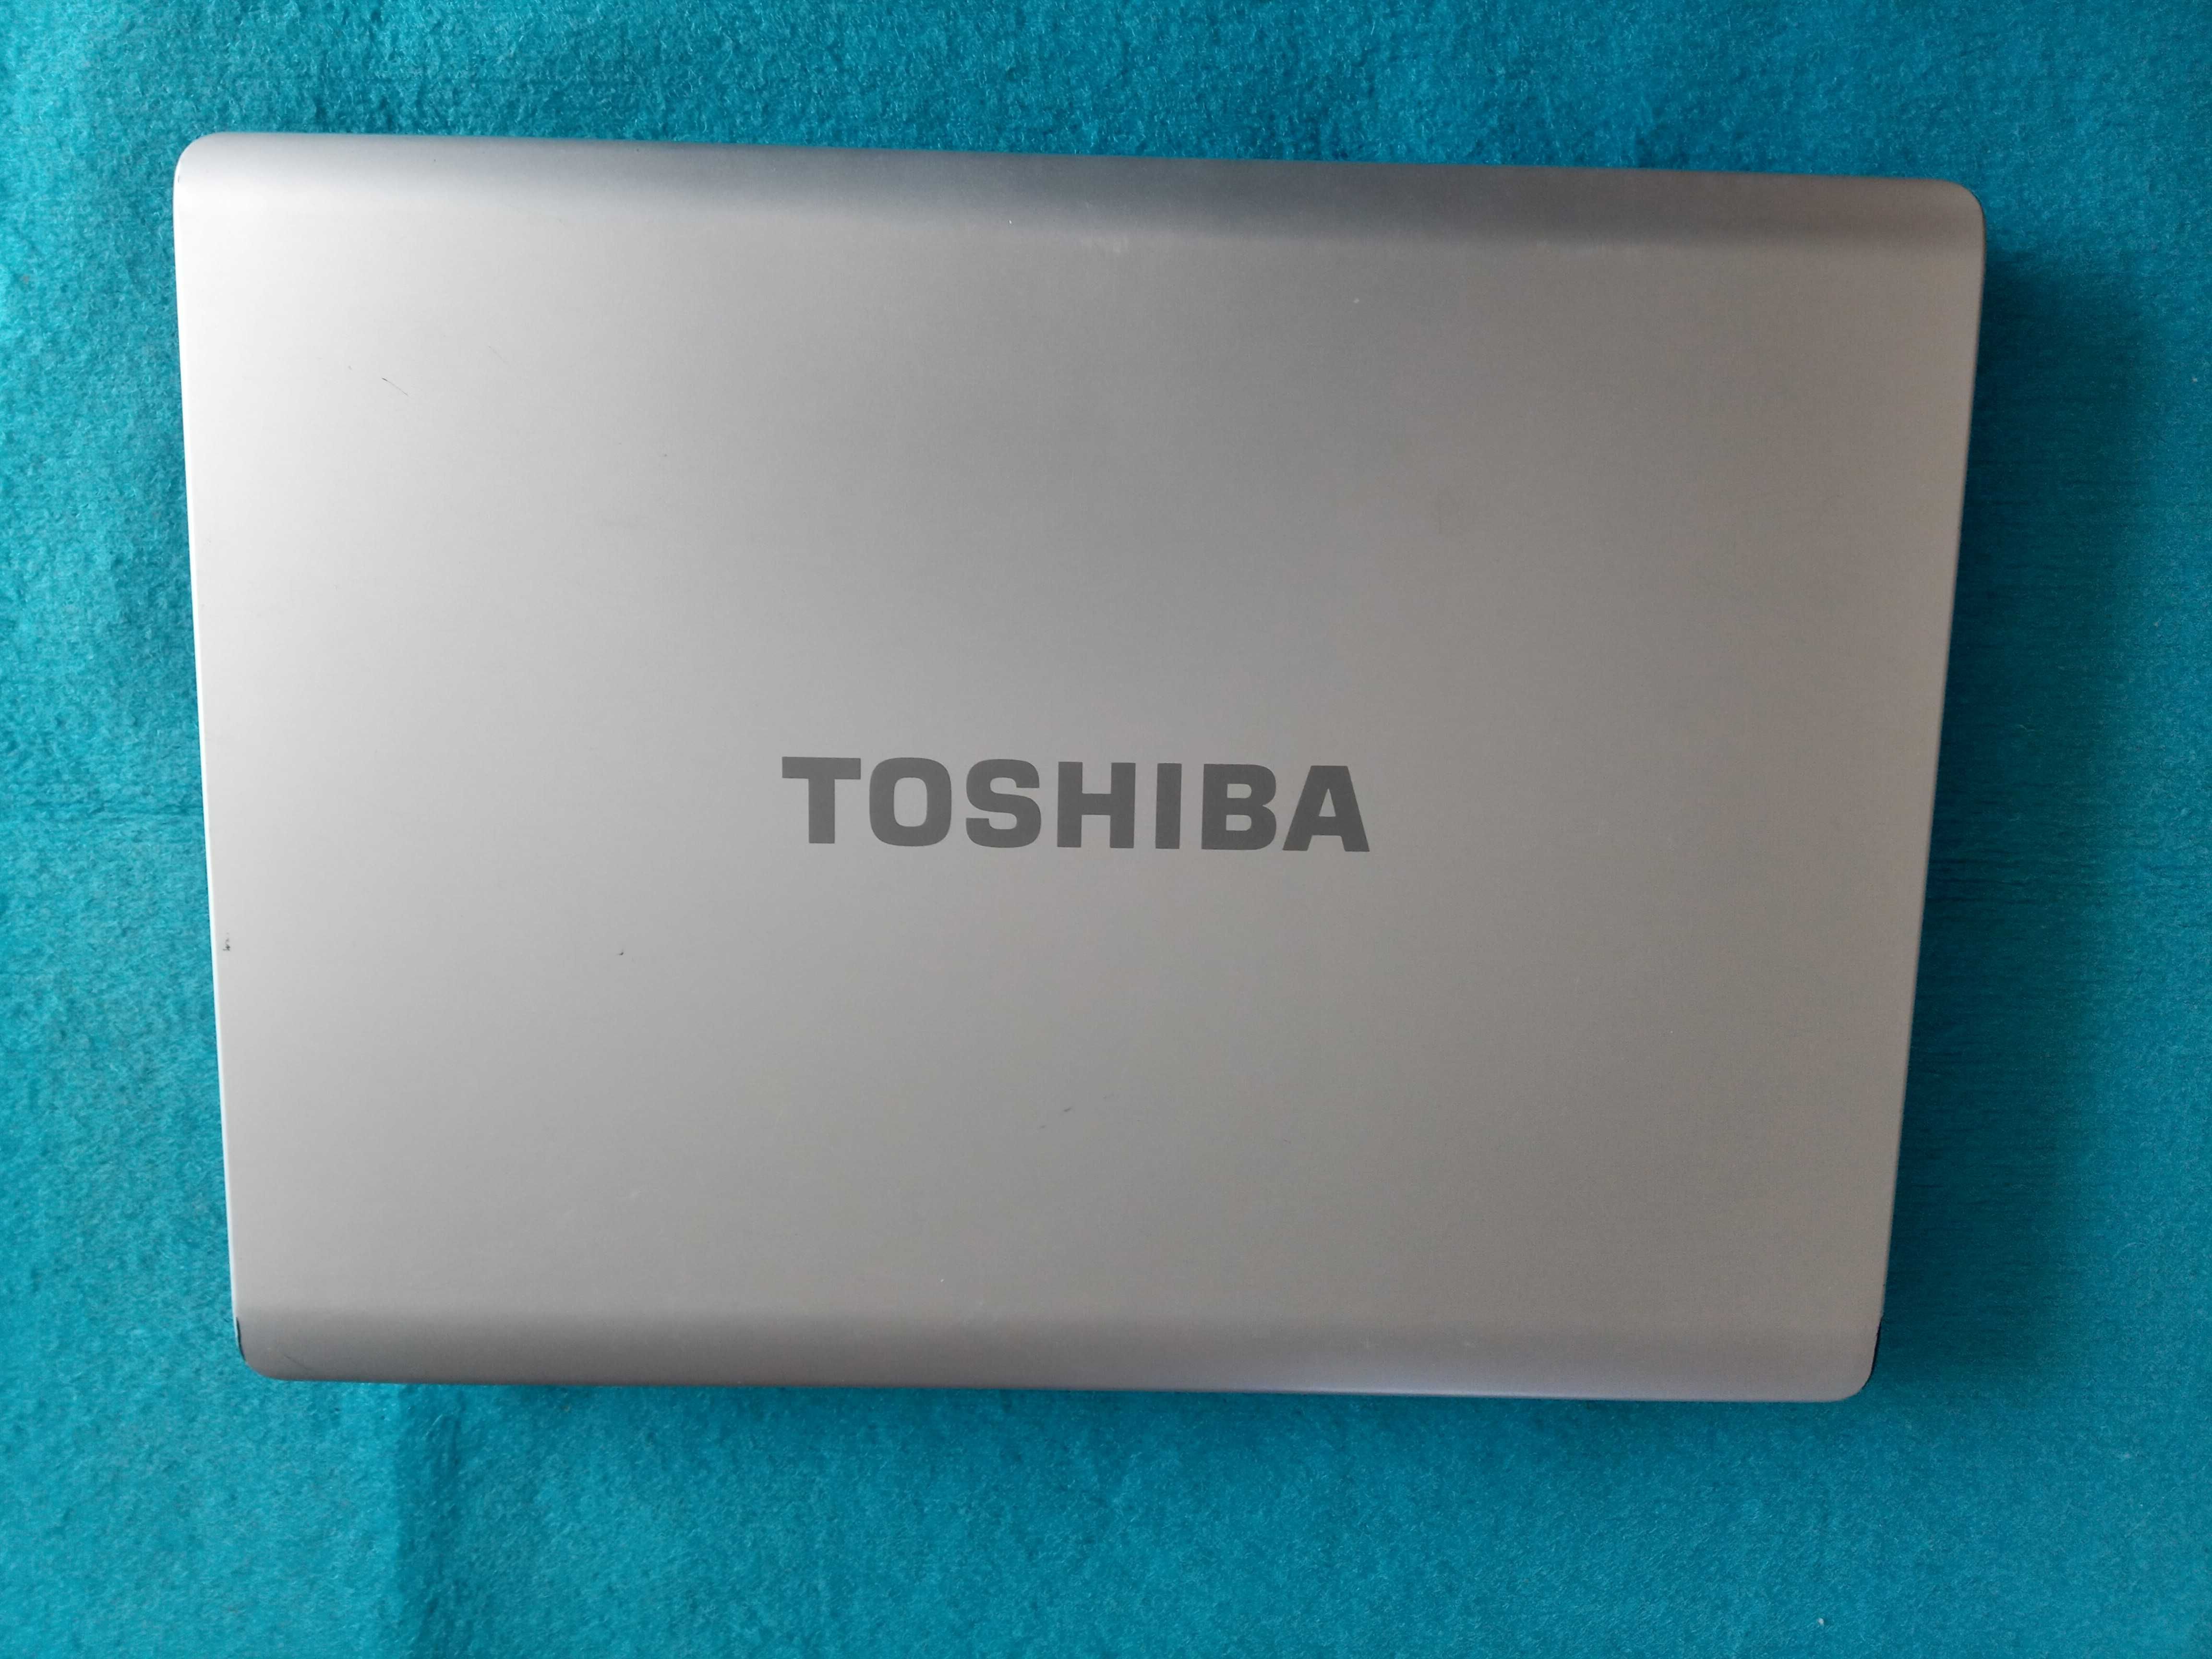 ноутбук Toshiba в хорошем состоянии с 2-х ядерным процессором Intel